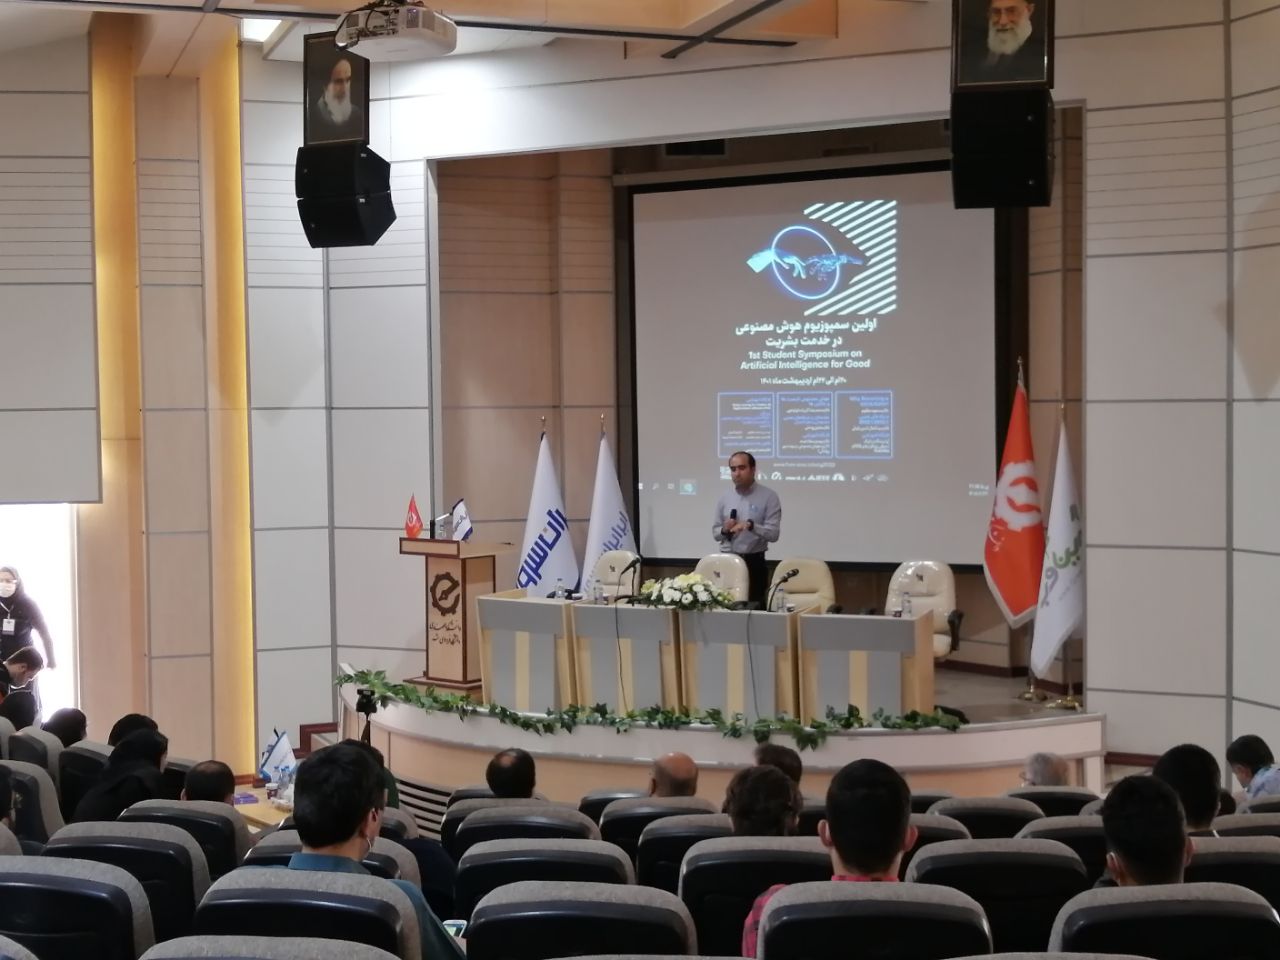 پایان اولین سمپوزیوم هوش مصنوعی در خدمت بشریت در مشهد